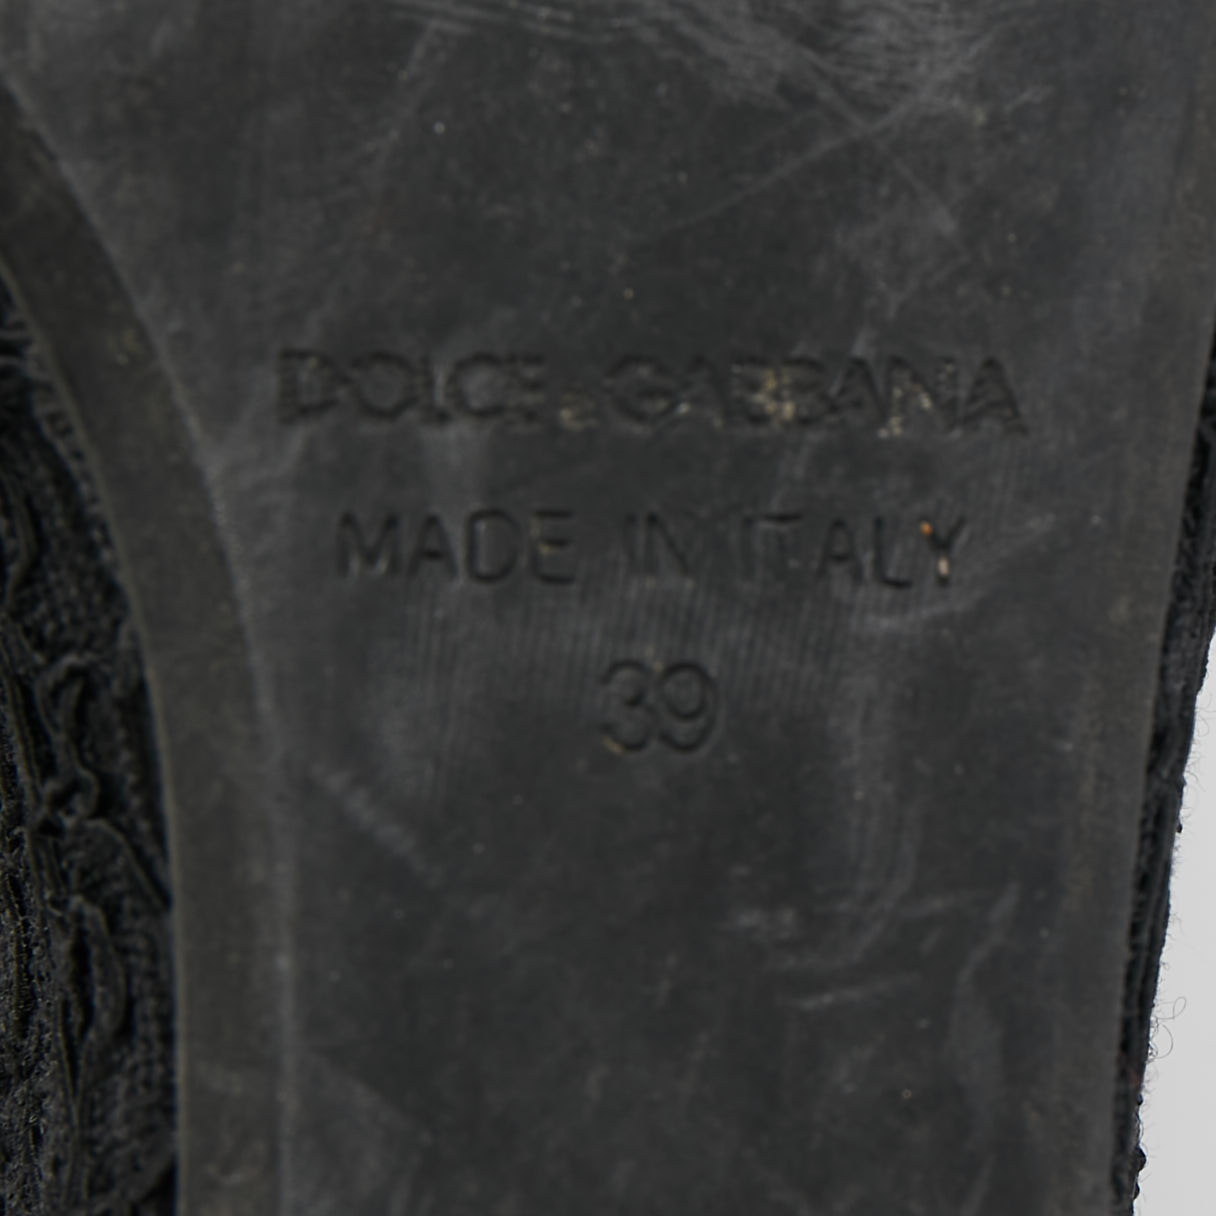 Dolce & Gabbana Black Lace Crystal Embellished Platform Wedge Slide Sandals Size 39